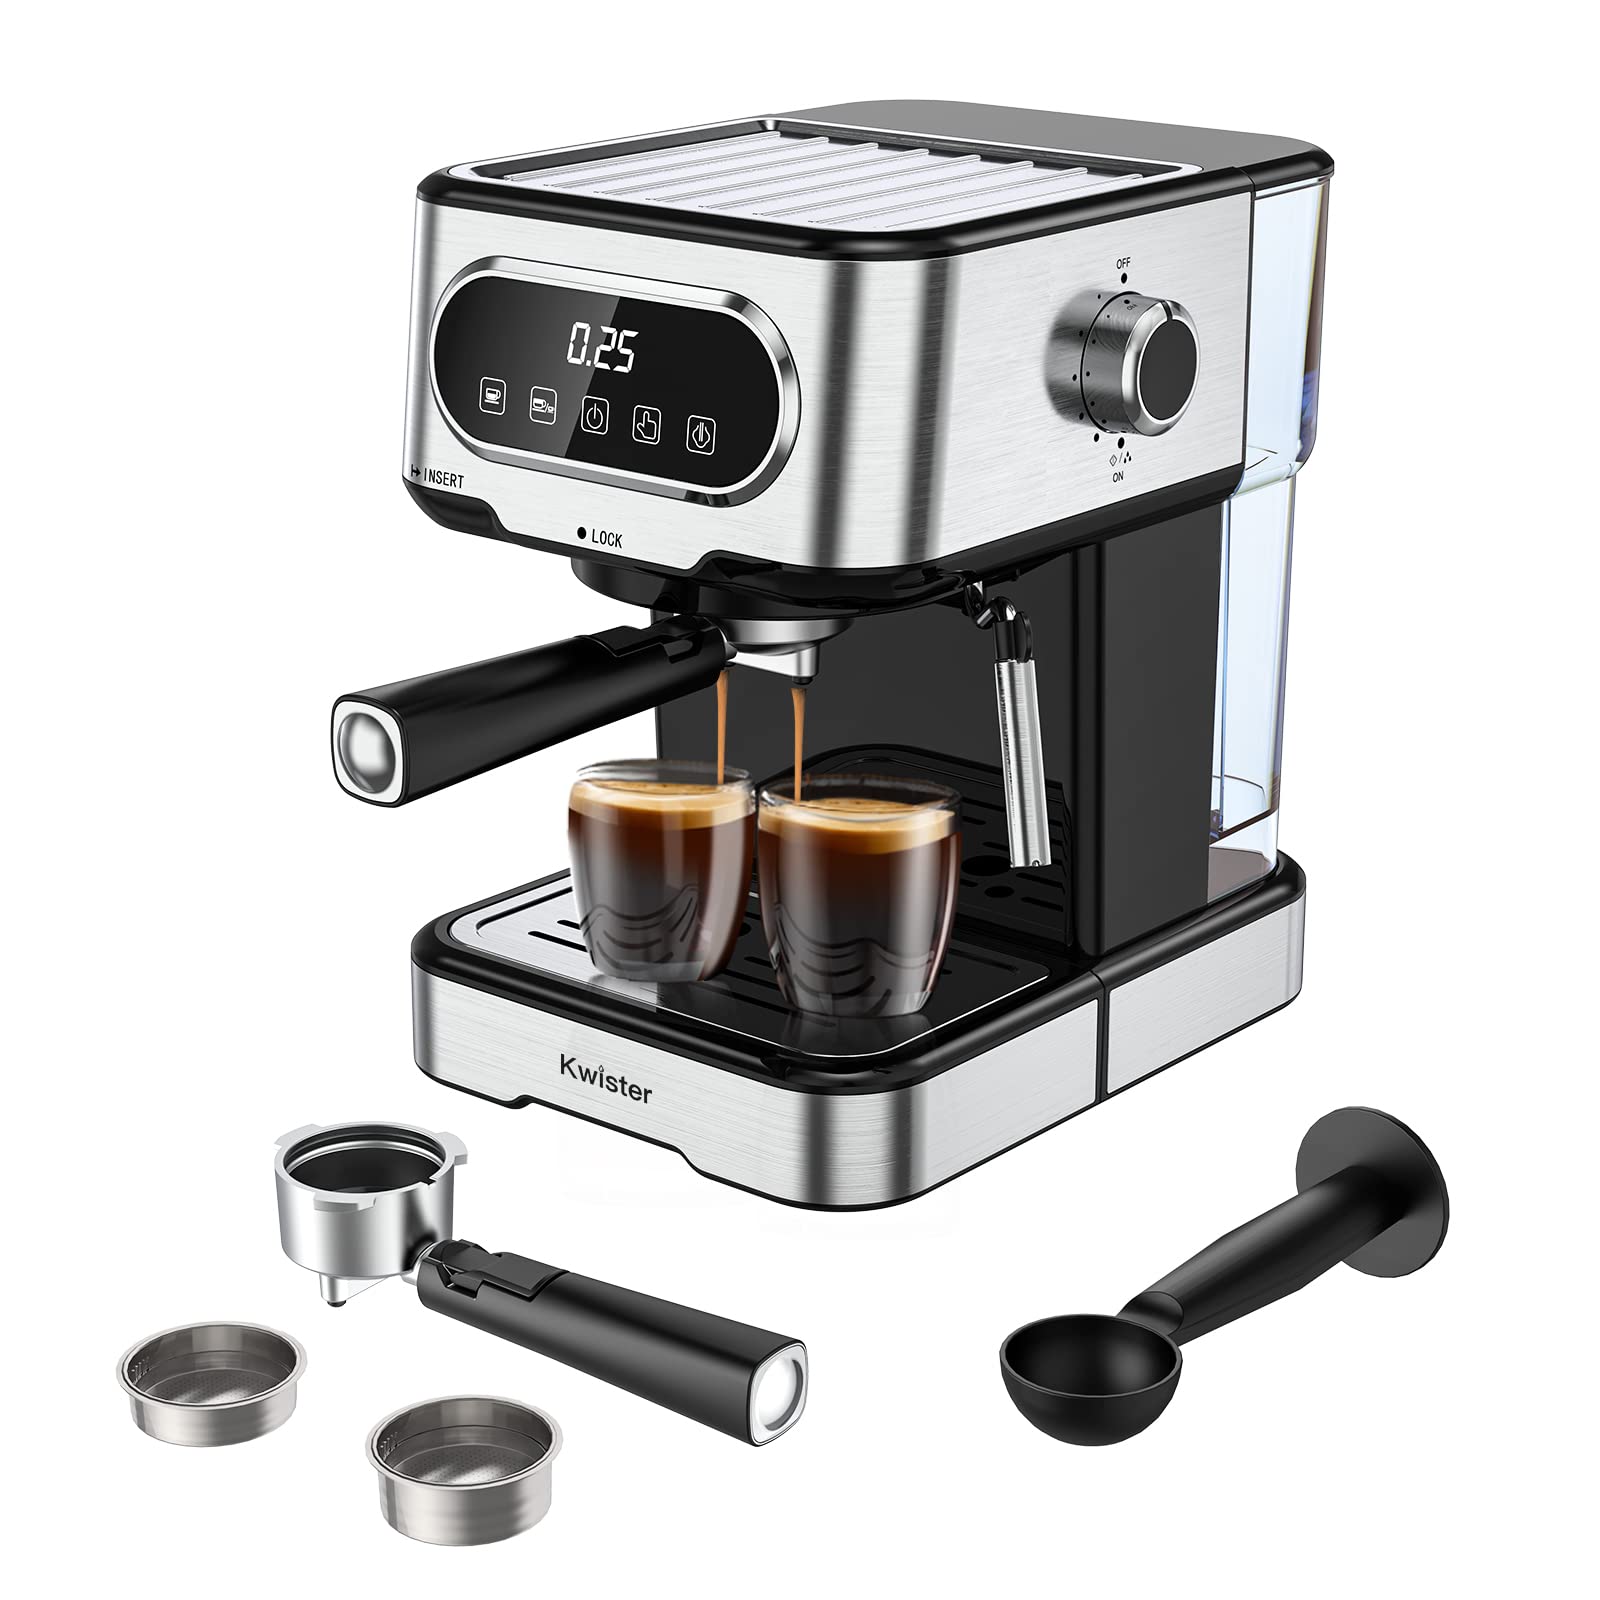 Kwister Espresso Machine